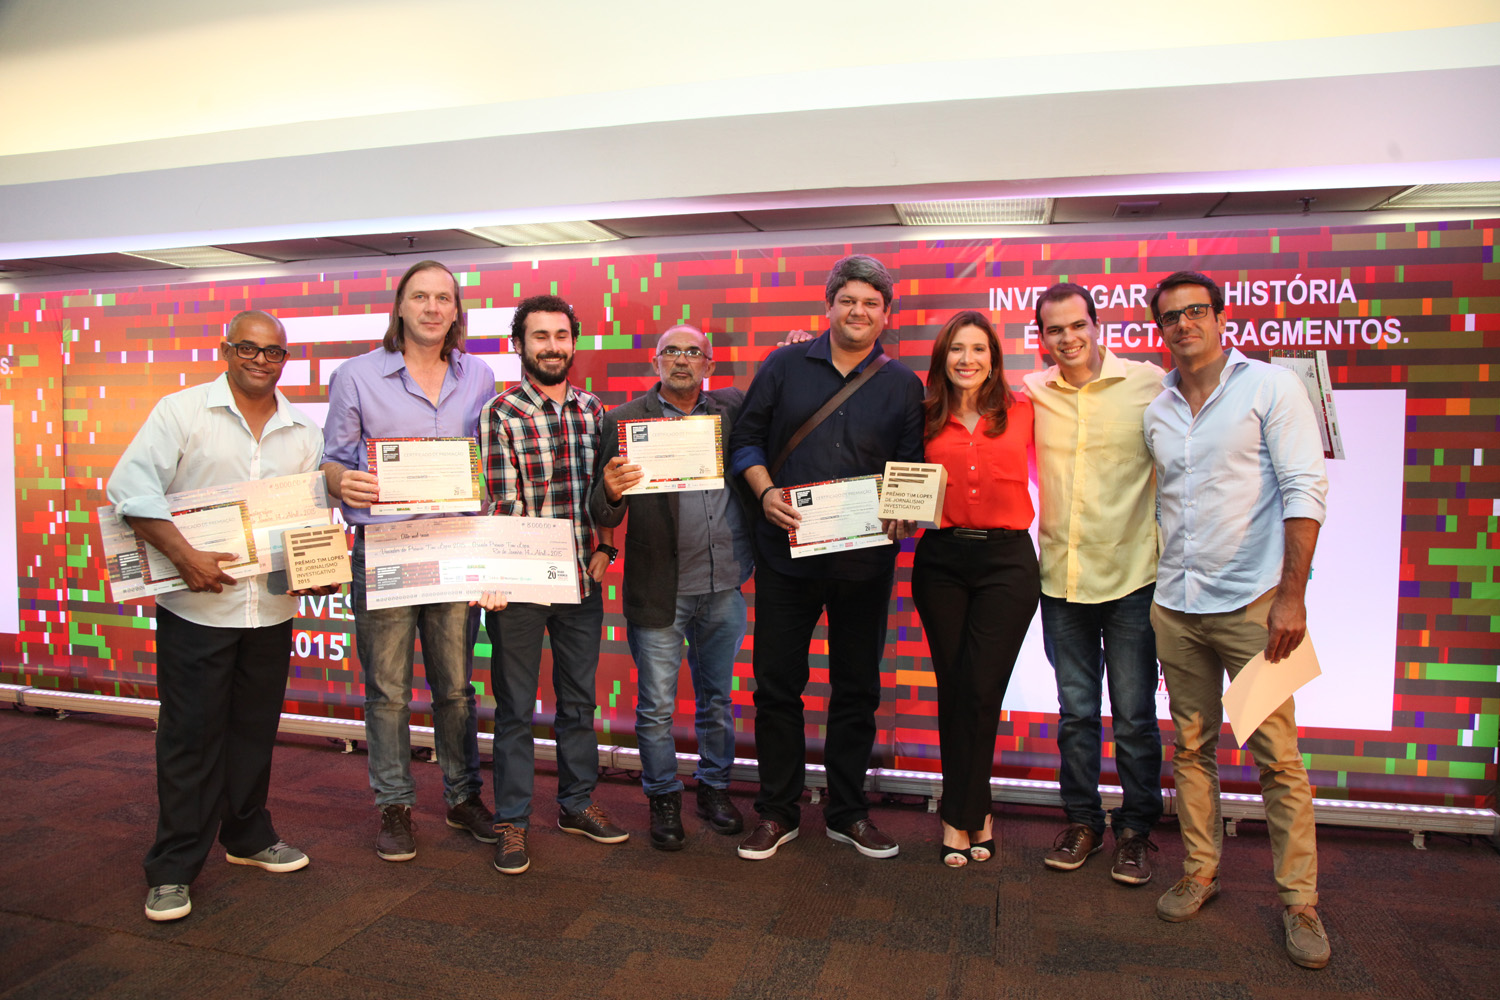 Ganhadores do Prêmio Tim Lopes de Jornalismo Investigativo 2015 (Reprodução www.premiotimlopes.com.br)